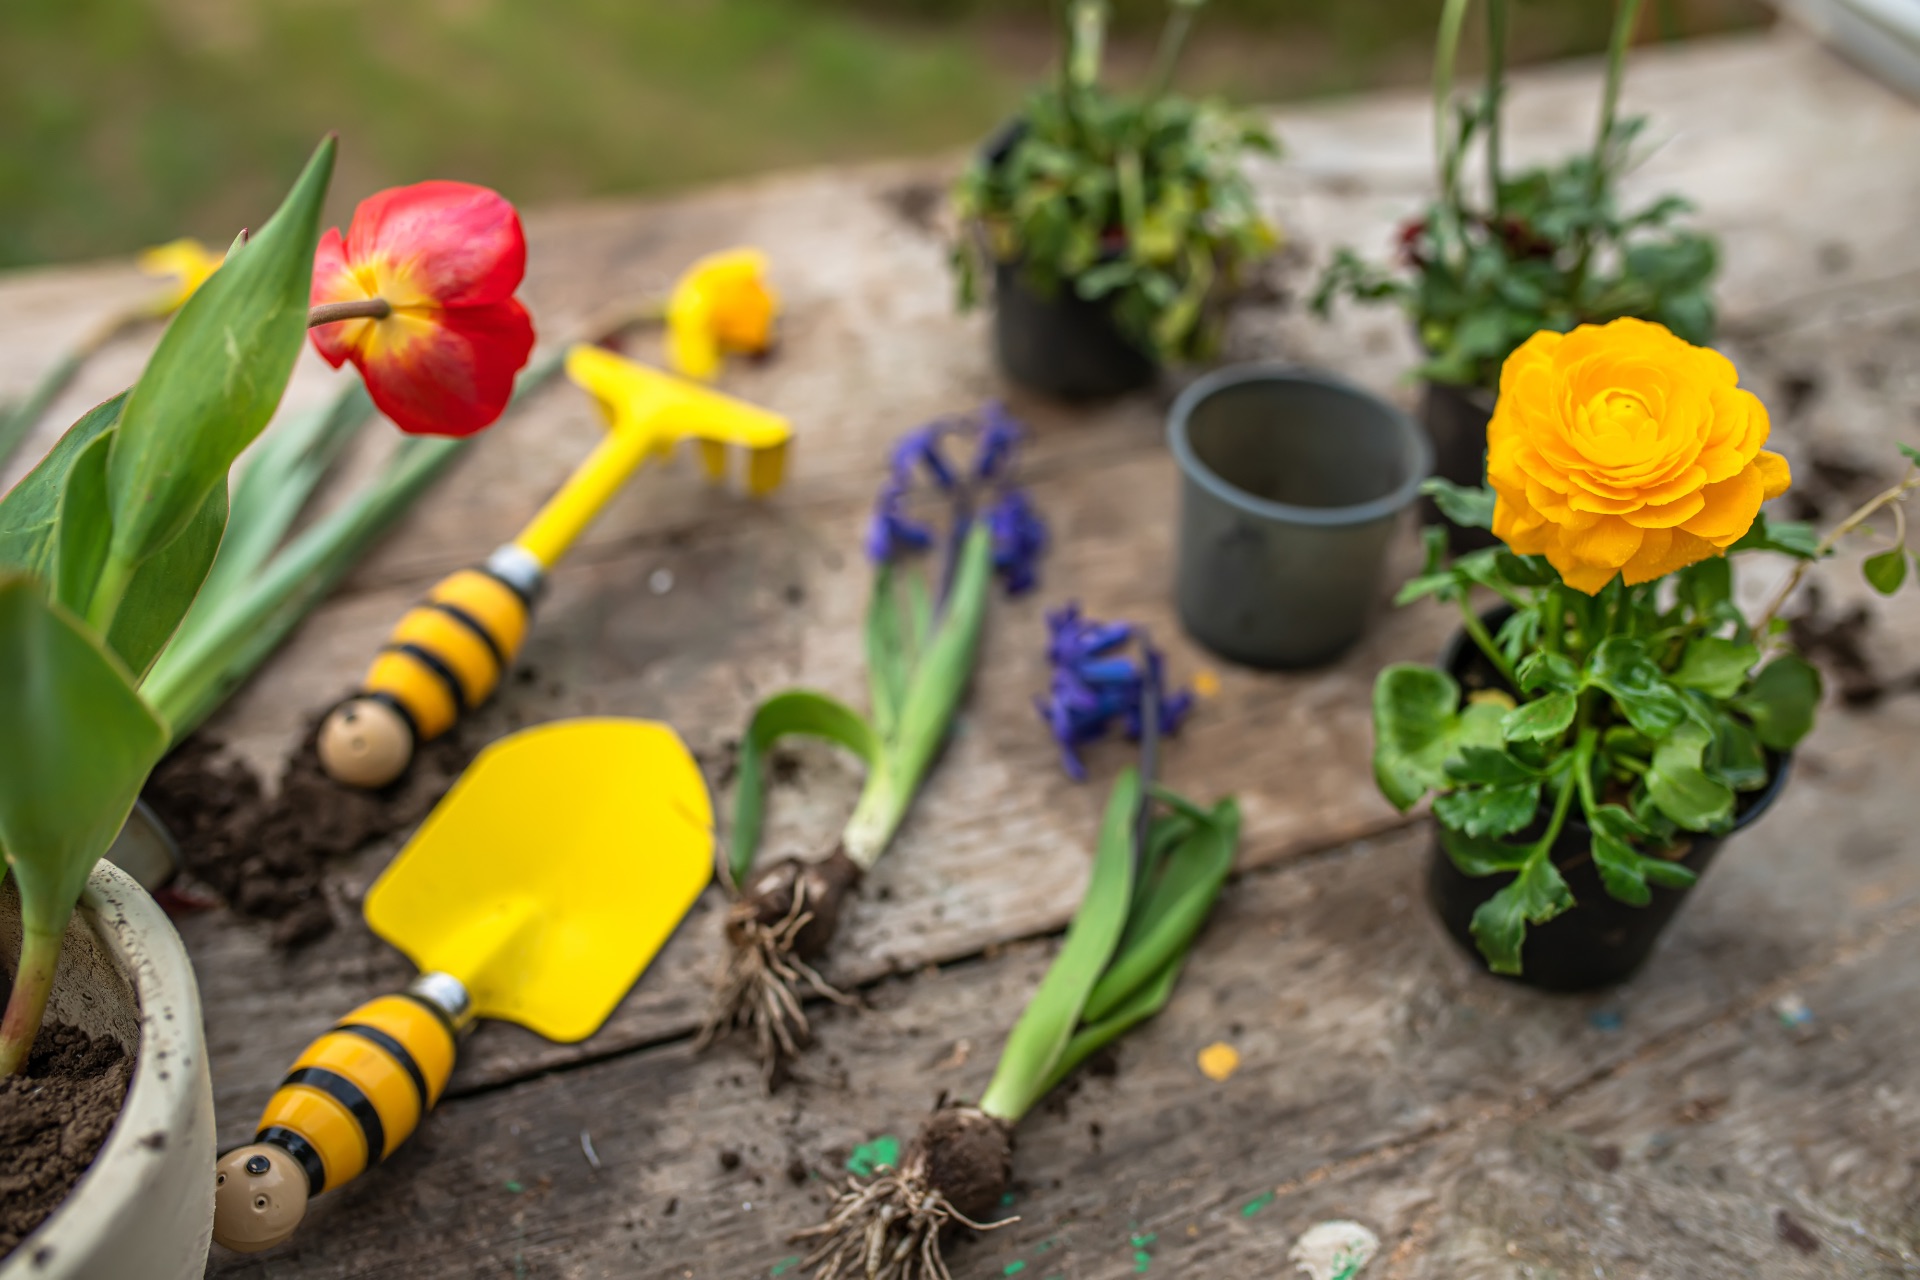 https://kolorline.hu/Ültessünk februárban „bőrszerkós” virágot! — Kazincbarcika főkertészének tanácsai kert- és balkonimádóknak